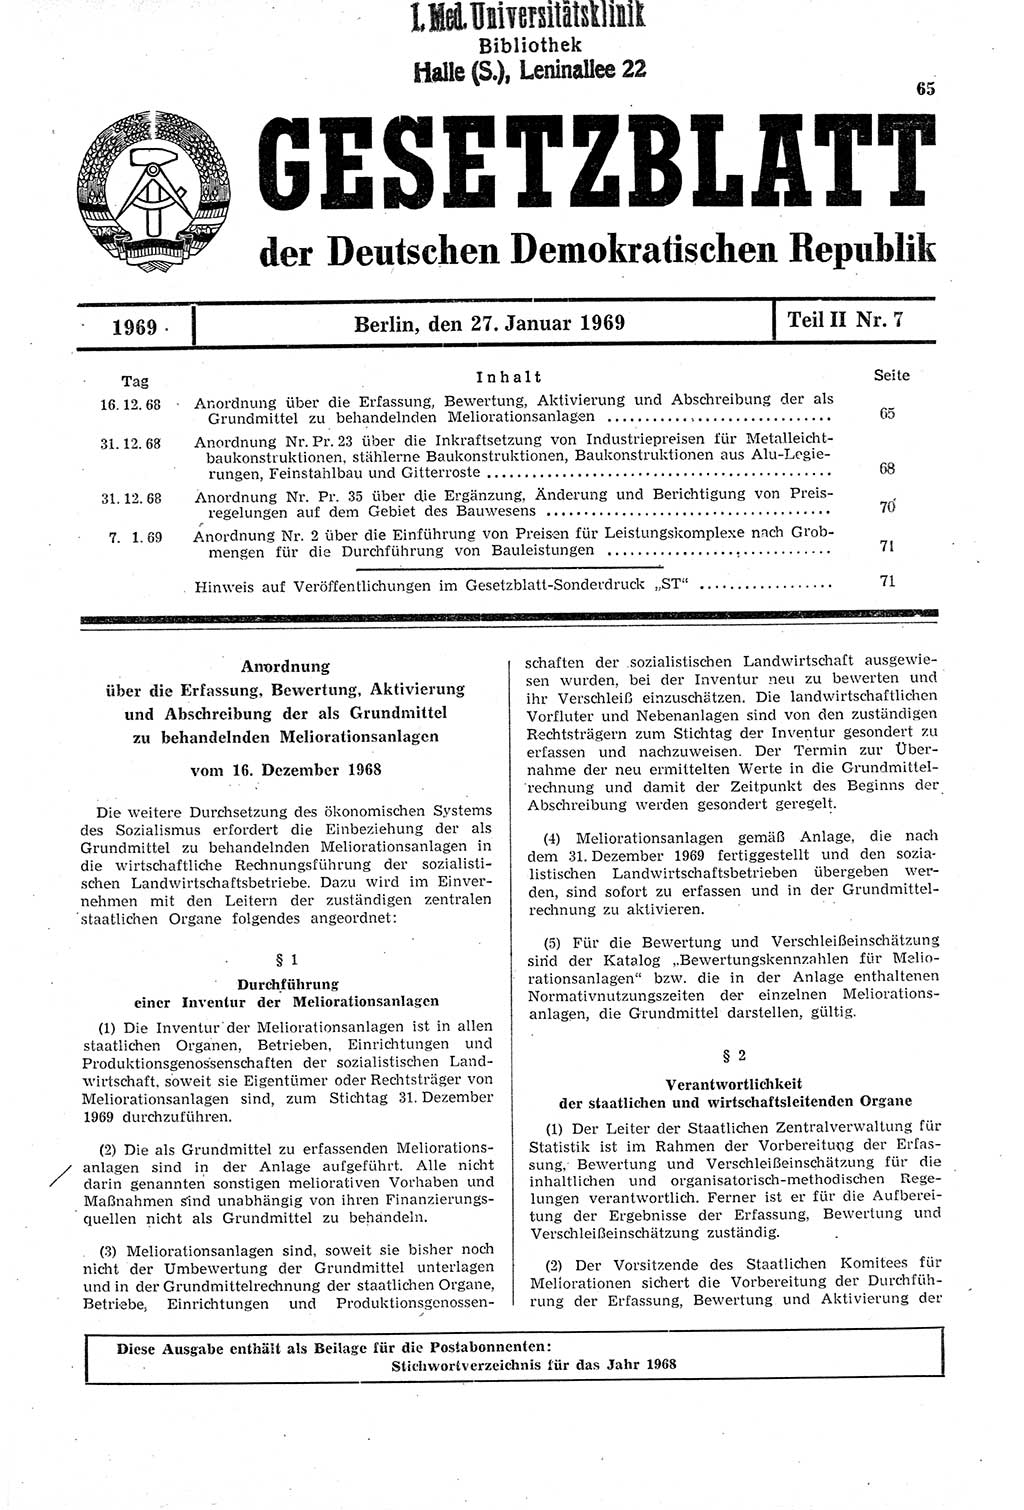 Gesetzblatt (GBl.) der Deutschen Demokratischen Republik (DDR) Teil ⅠⅠ 1969, Seite 65 (GBl. DDR ⅠⅠ 1969, S. 65)